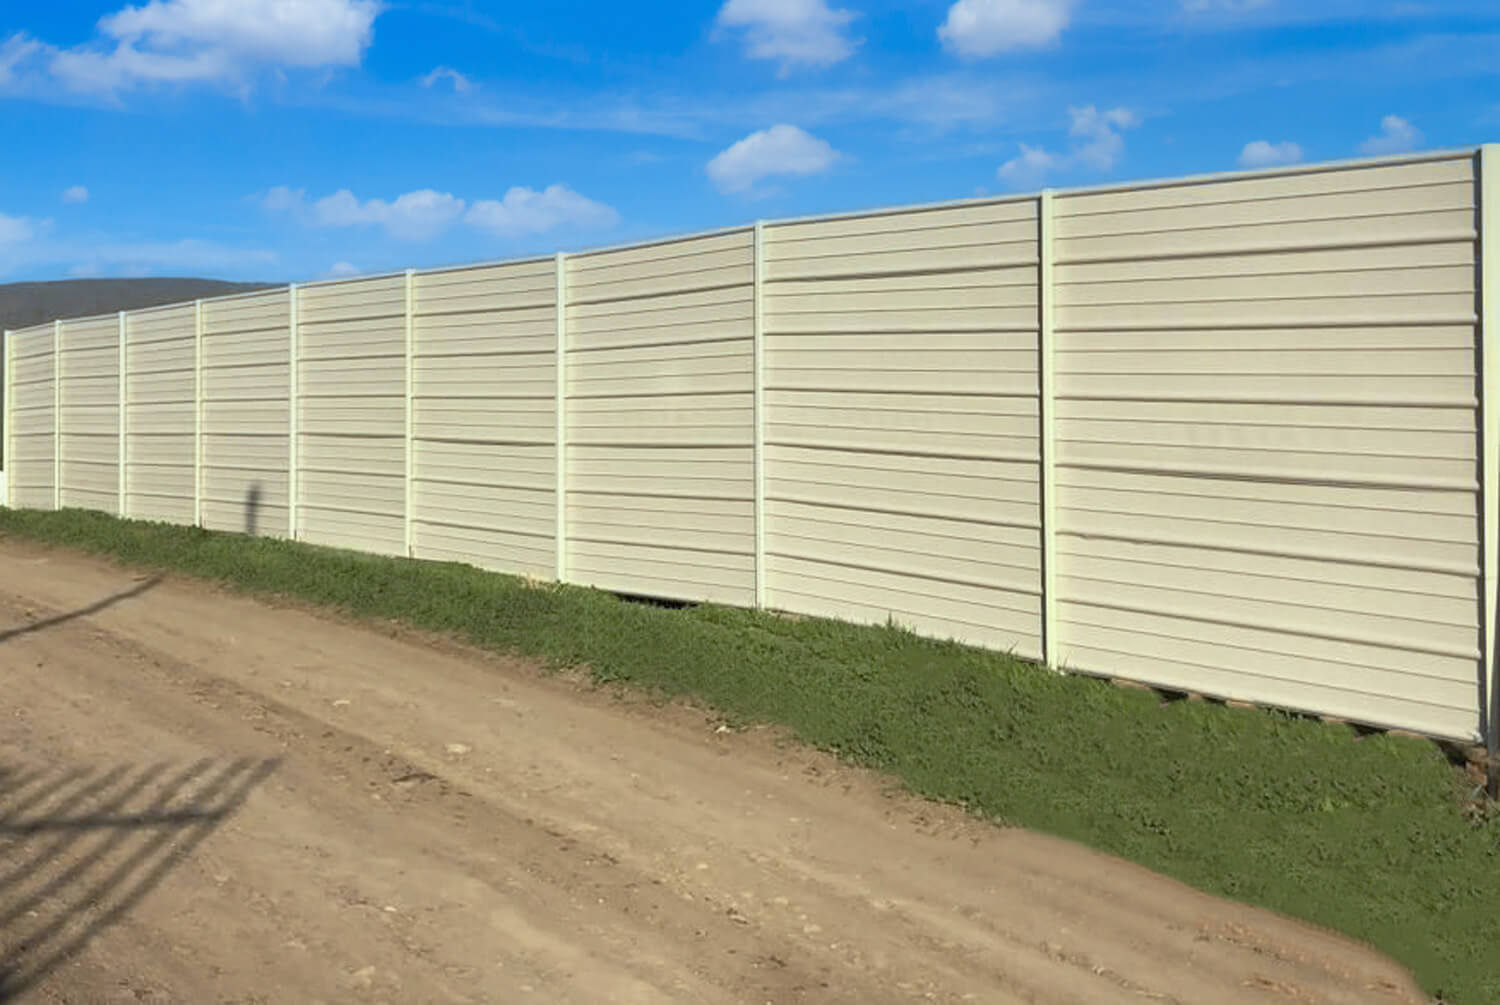 FenSteel Steel Fence in Beige Color